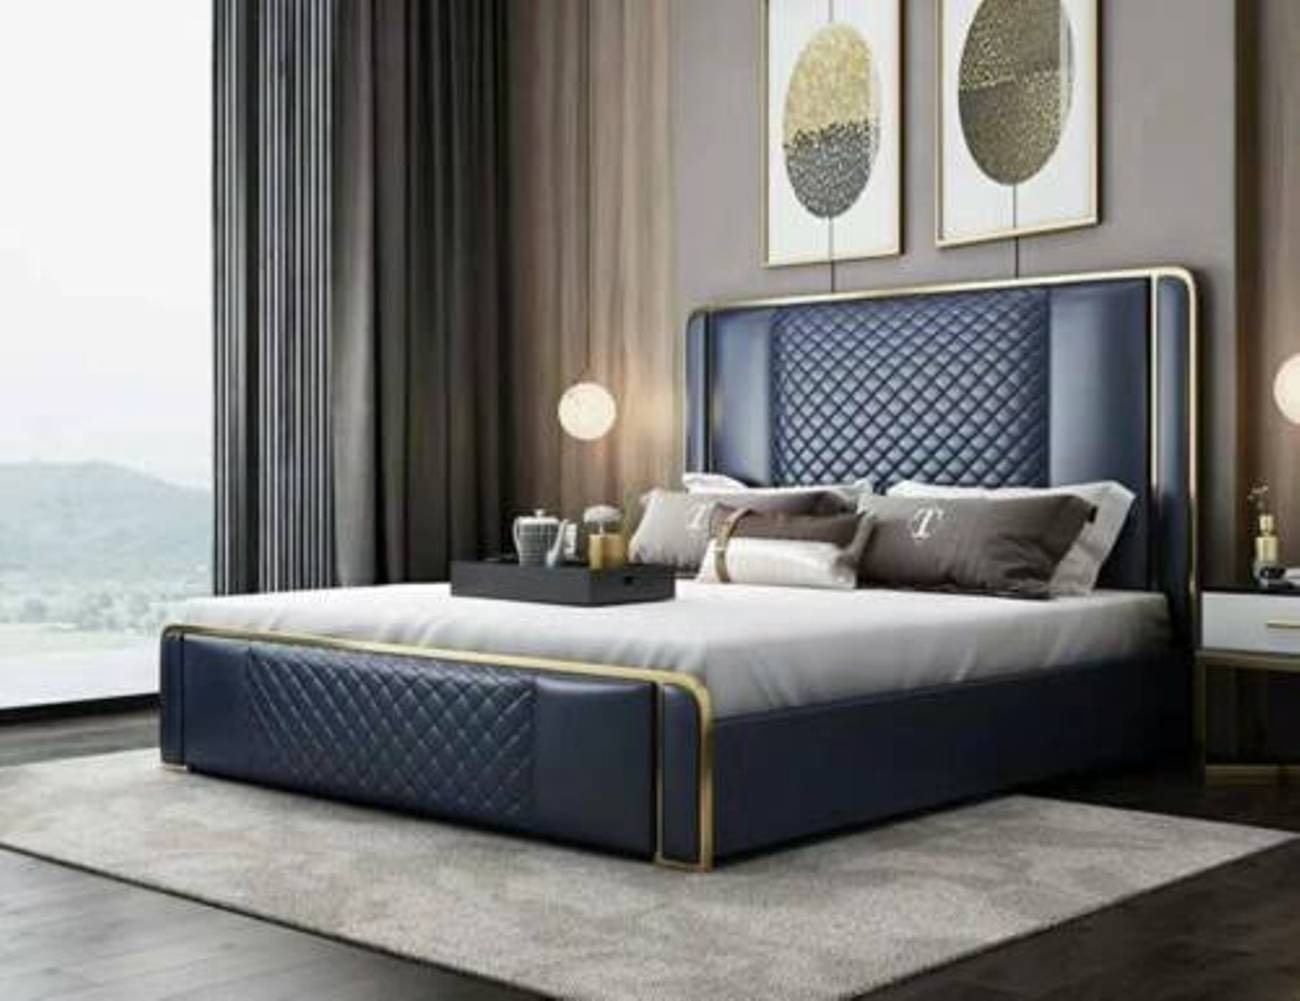 JVmoebel Lederbett, Designer Bett 180x200 Leder Hotel Metall Betten Doppel Ehe Schlaf von JVmoebel